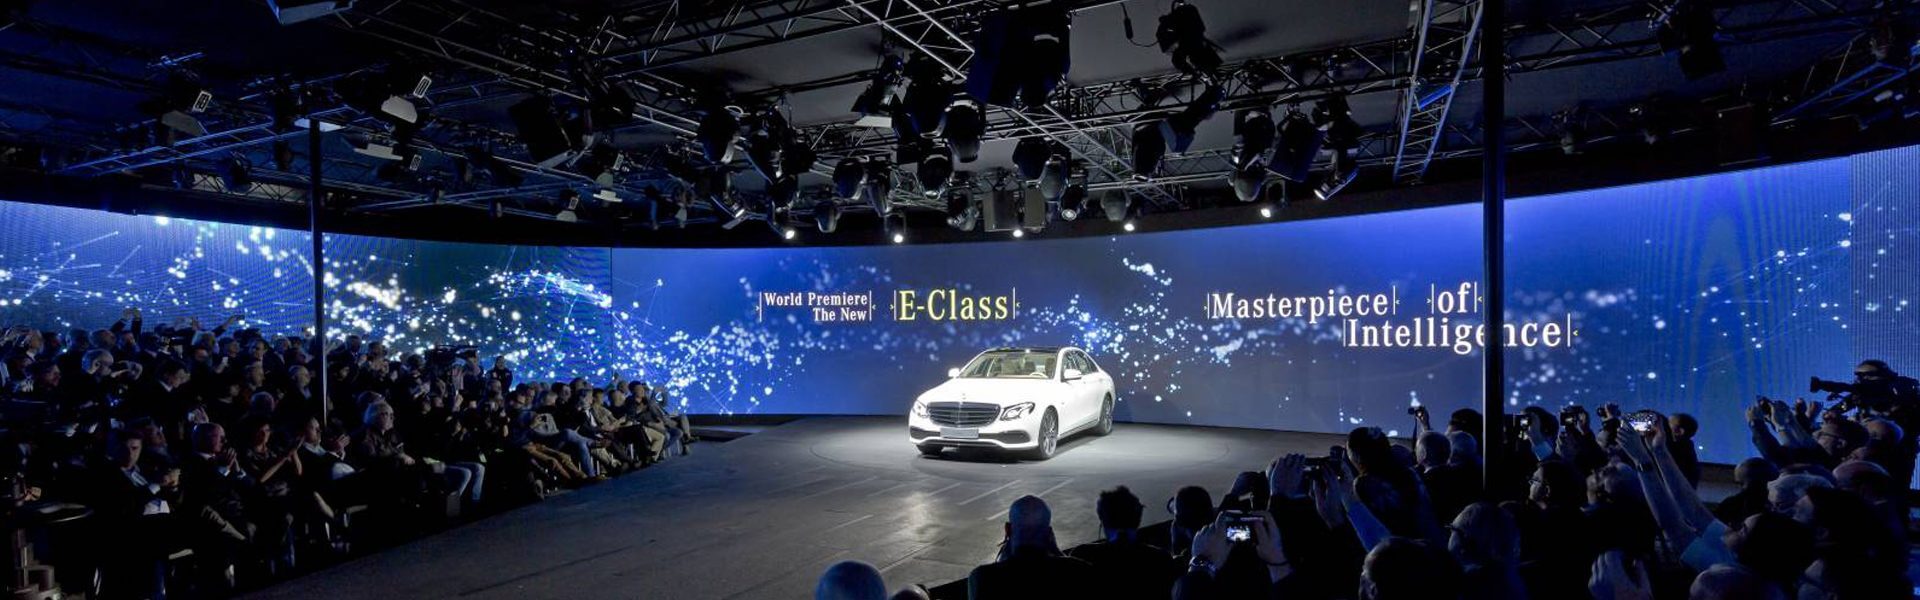 Impression Weltpremiere der Mercedes-Benz E-Klasse